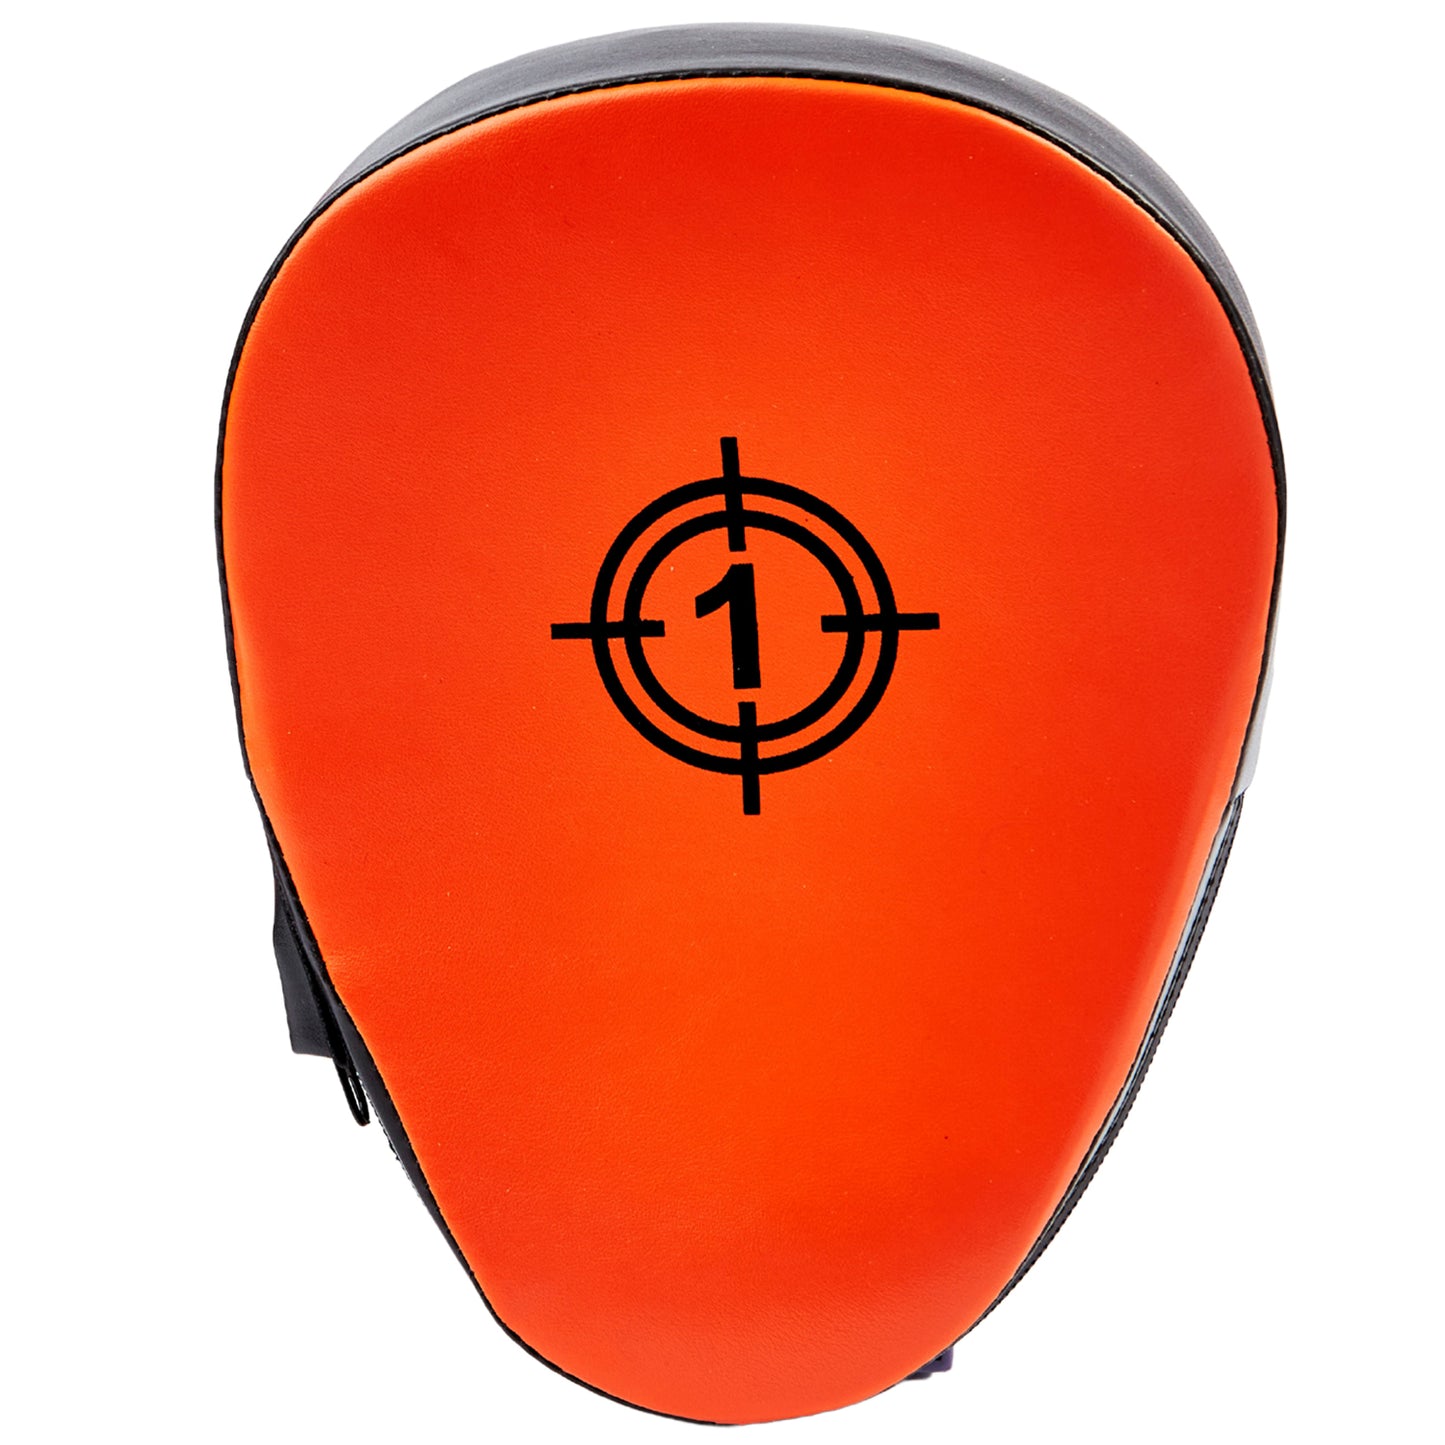 Focus pad target orange 